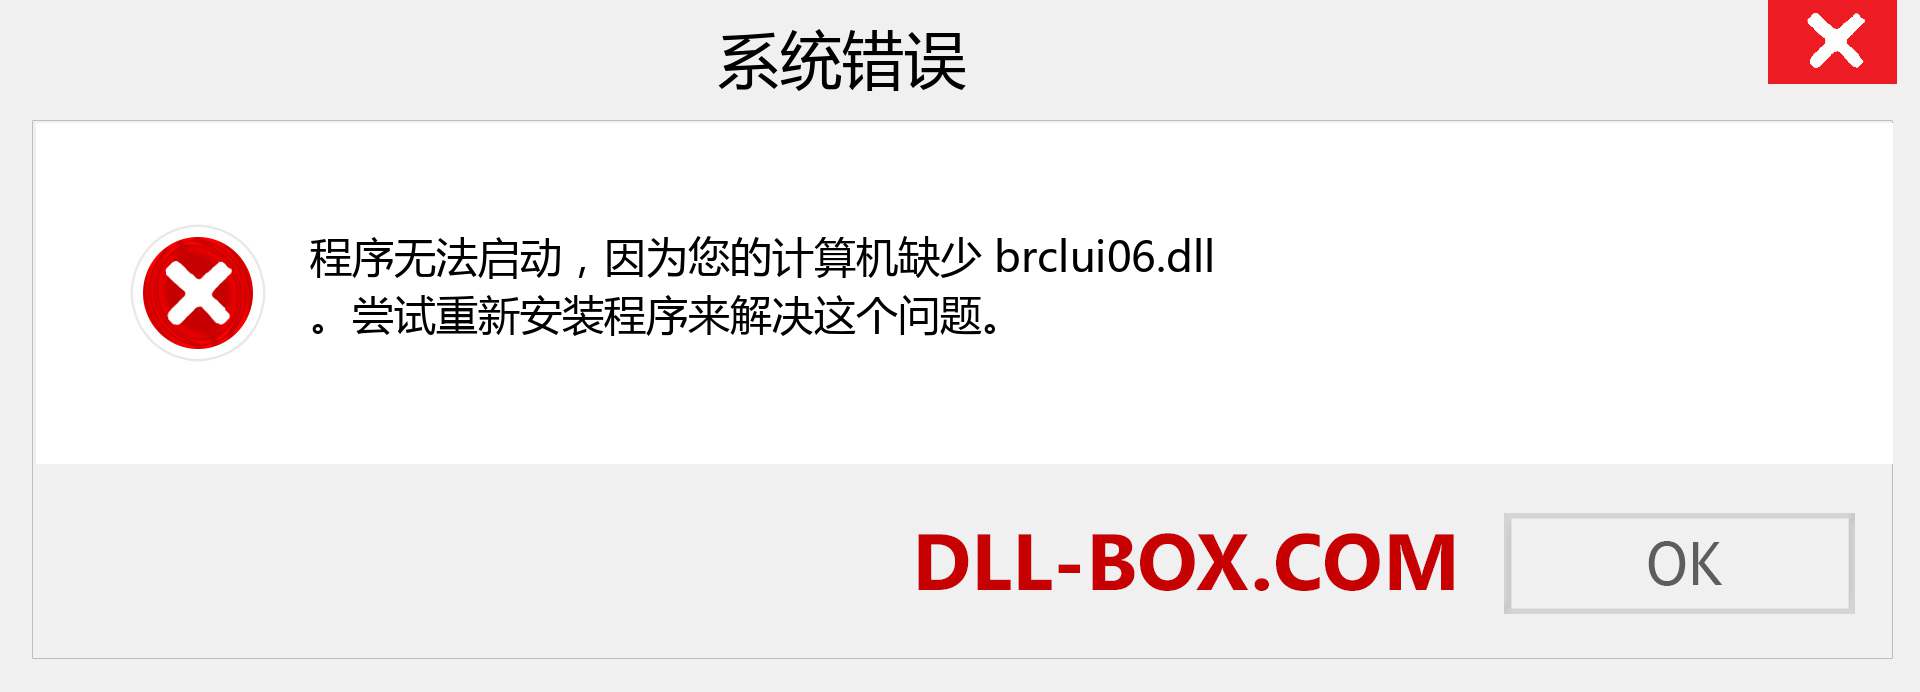 brclui06.dll 文件丢失？。 适用于 Windows 7、8、10 的下载 - 修复 Windows、照片、图像上的 brclui06 dll 丢失错误